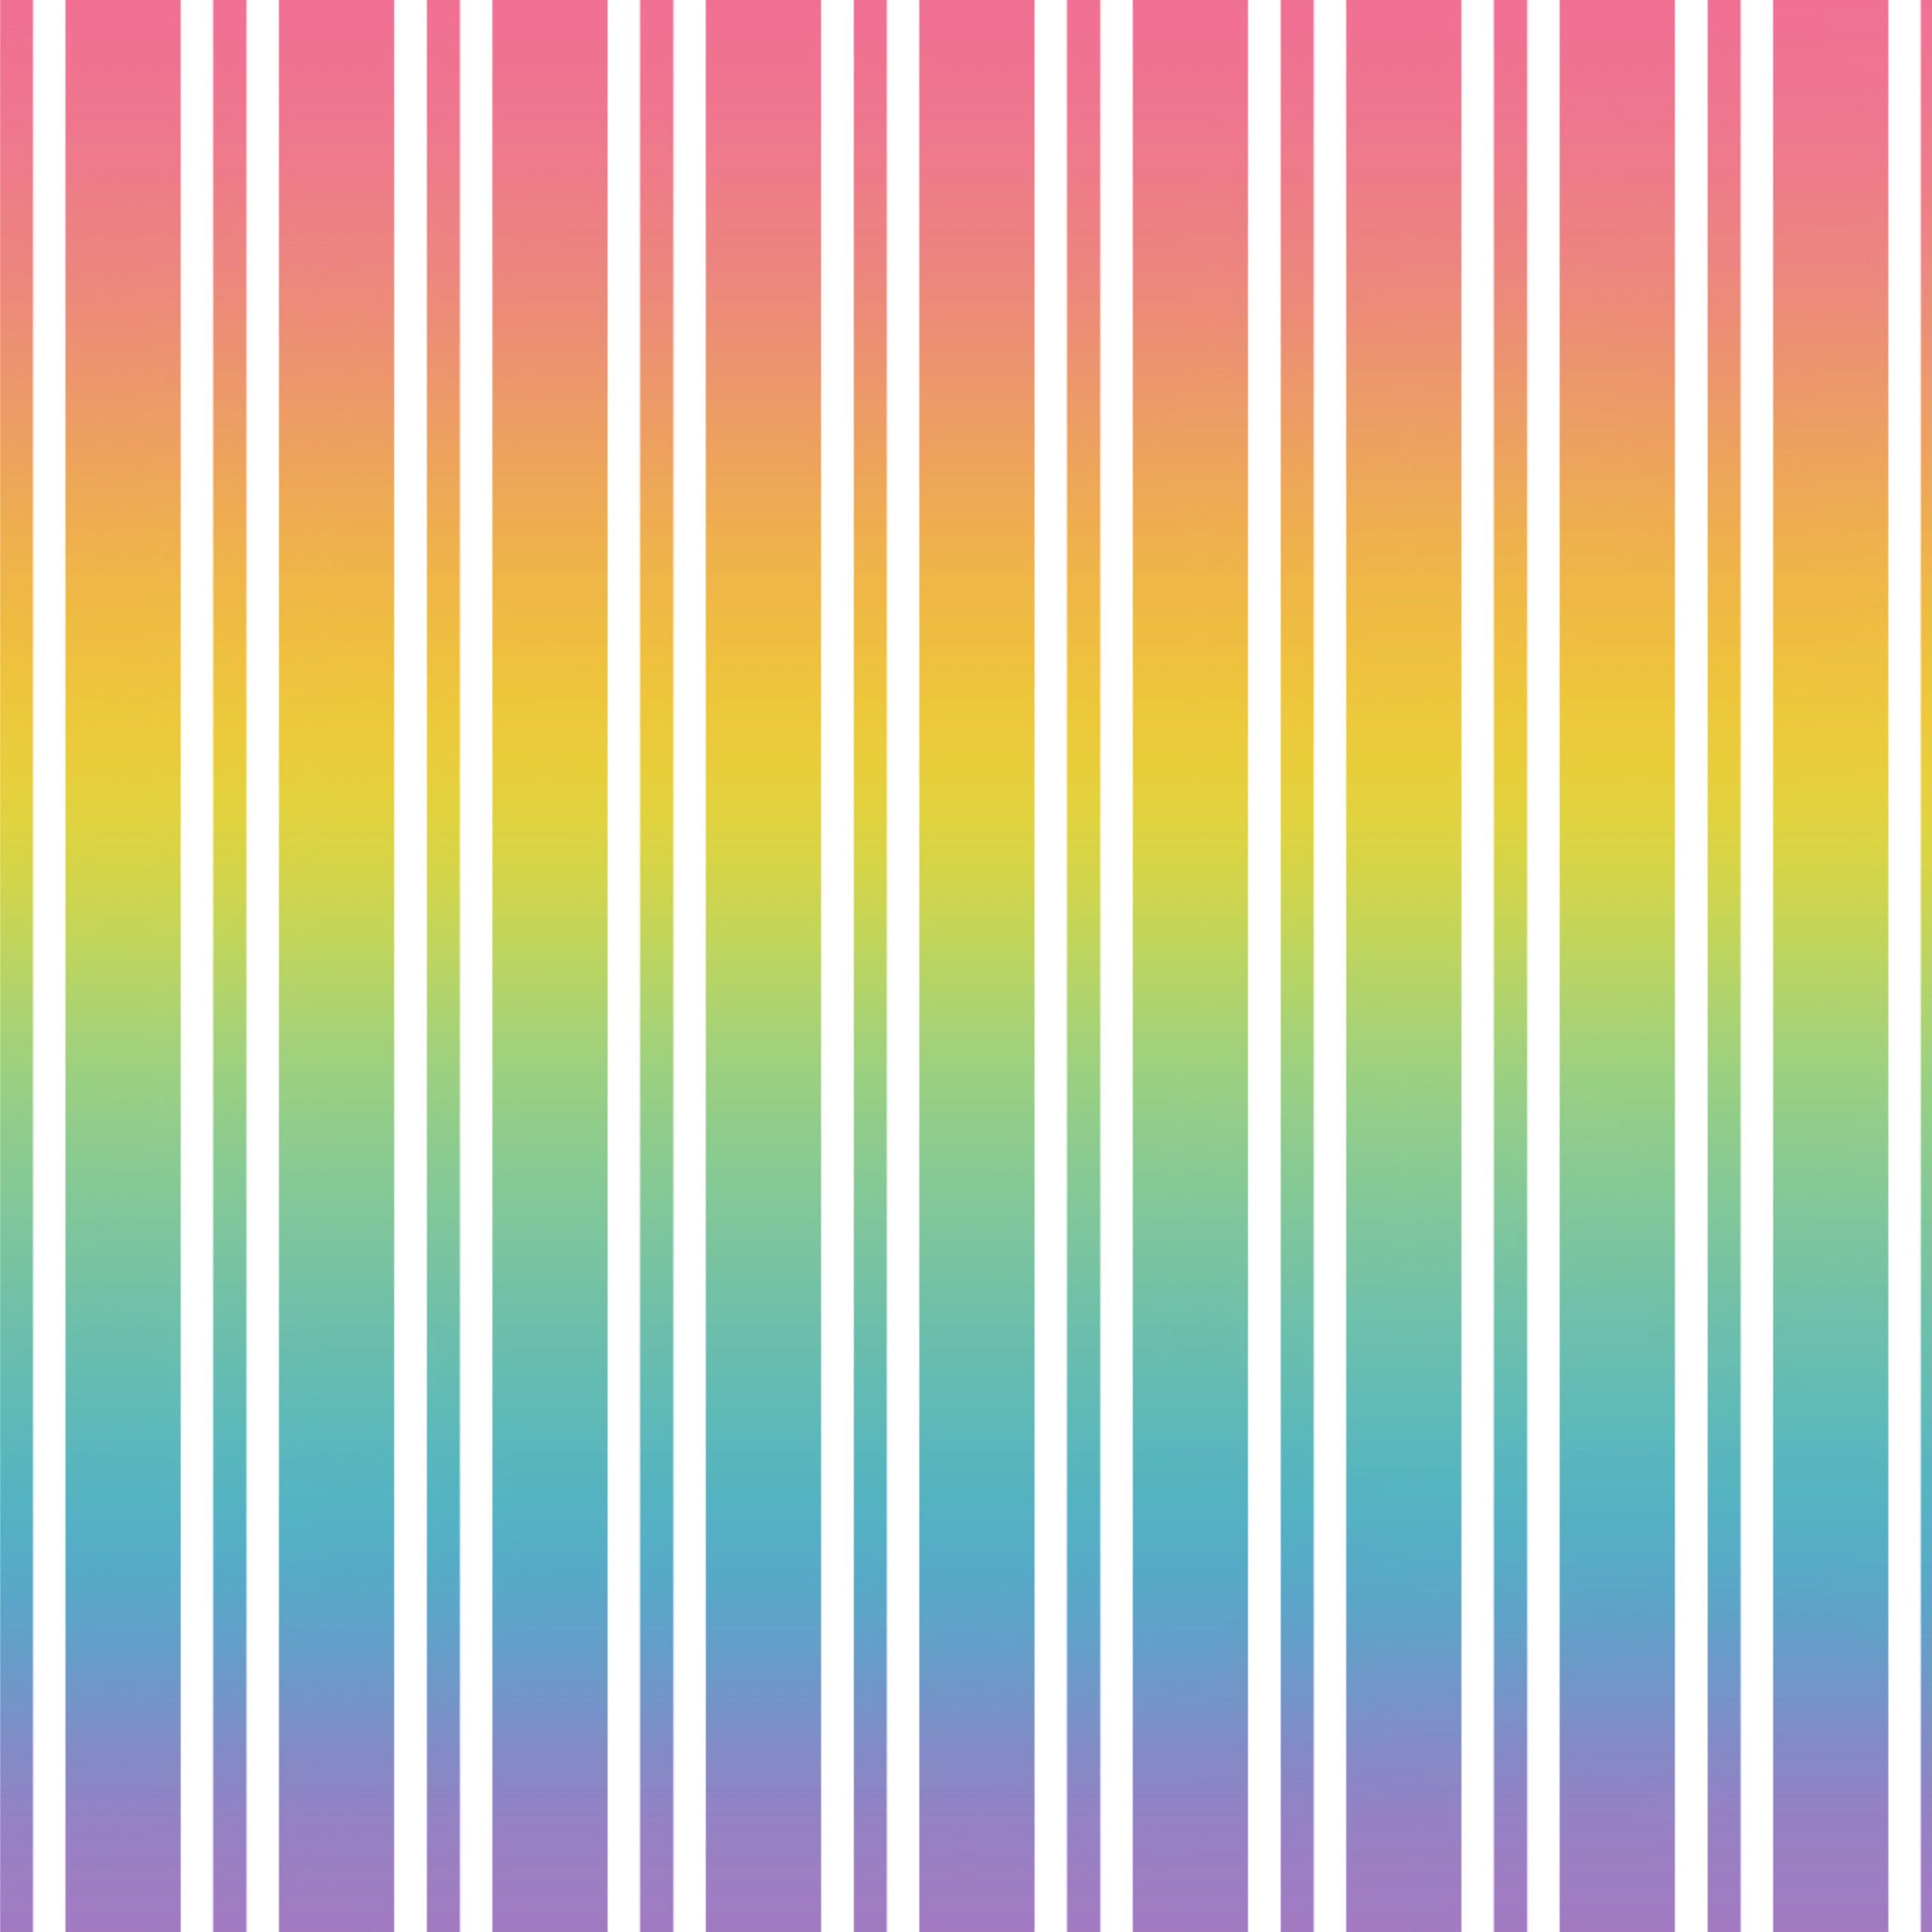 Papel digital para scrapbooking de líneas blancas dobles sobre un fondo de colores arcoiris